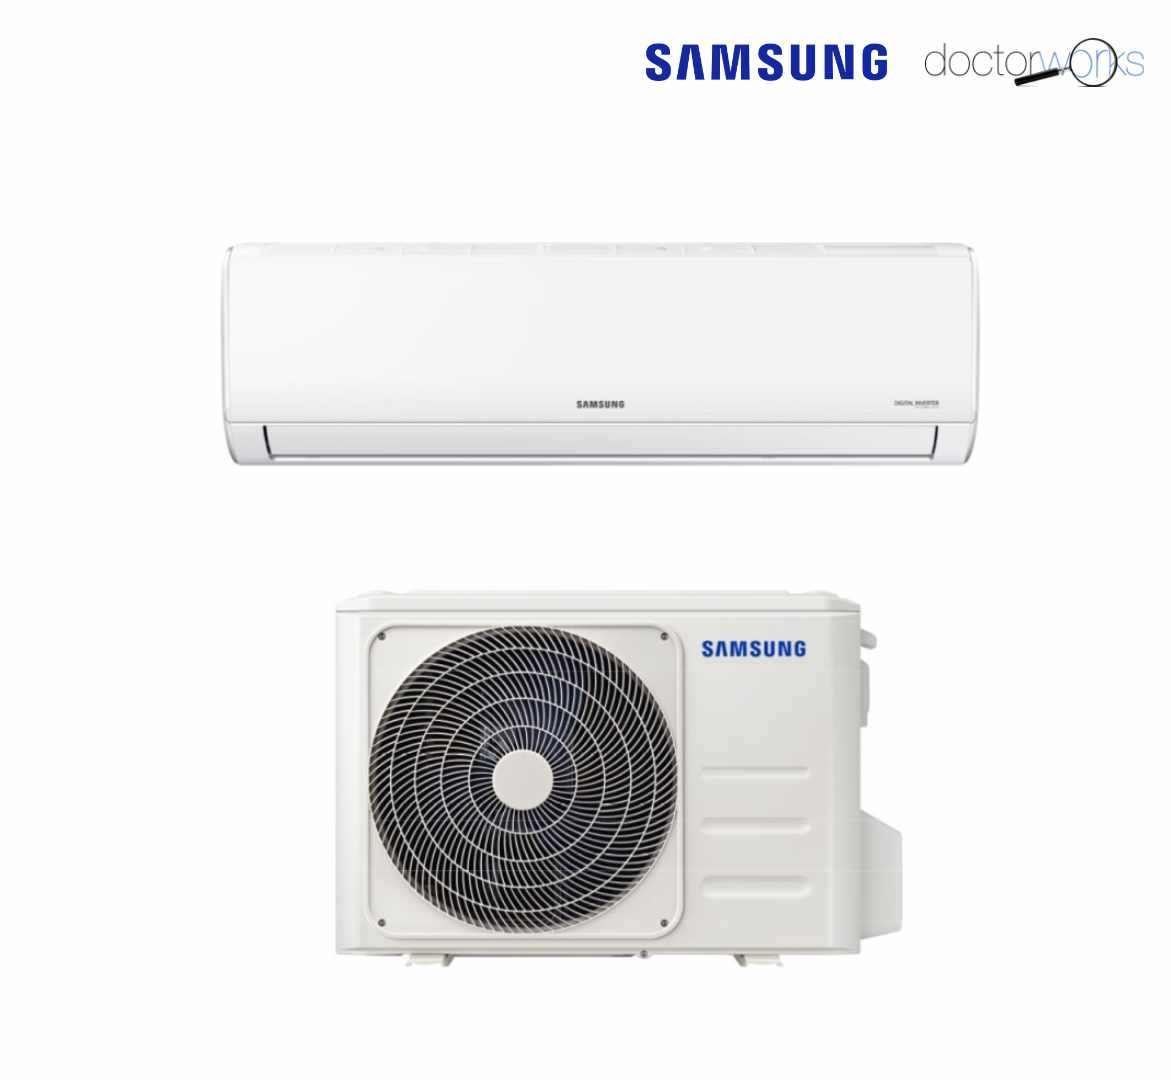 Samsung SPLIT PARED R-32 AR-35 3,5-3,8 kw Frío/calor 1x1